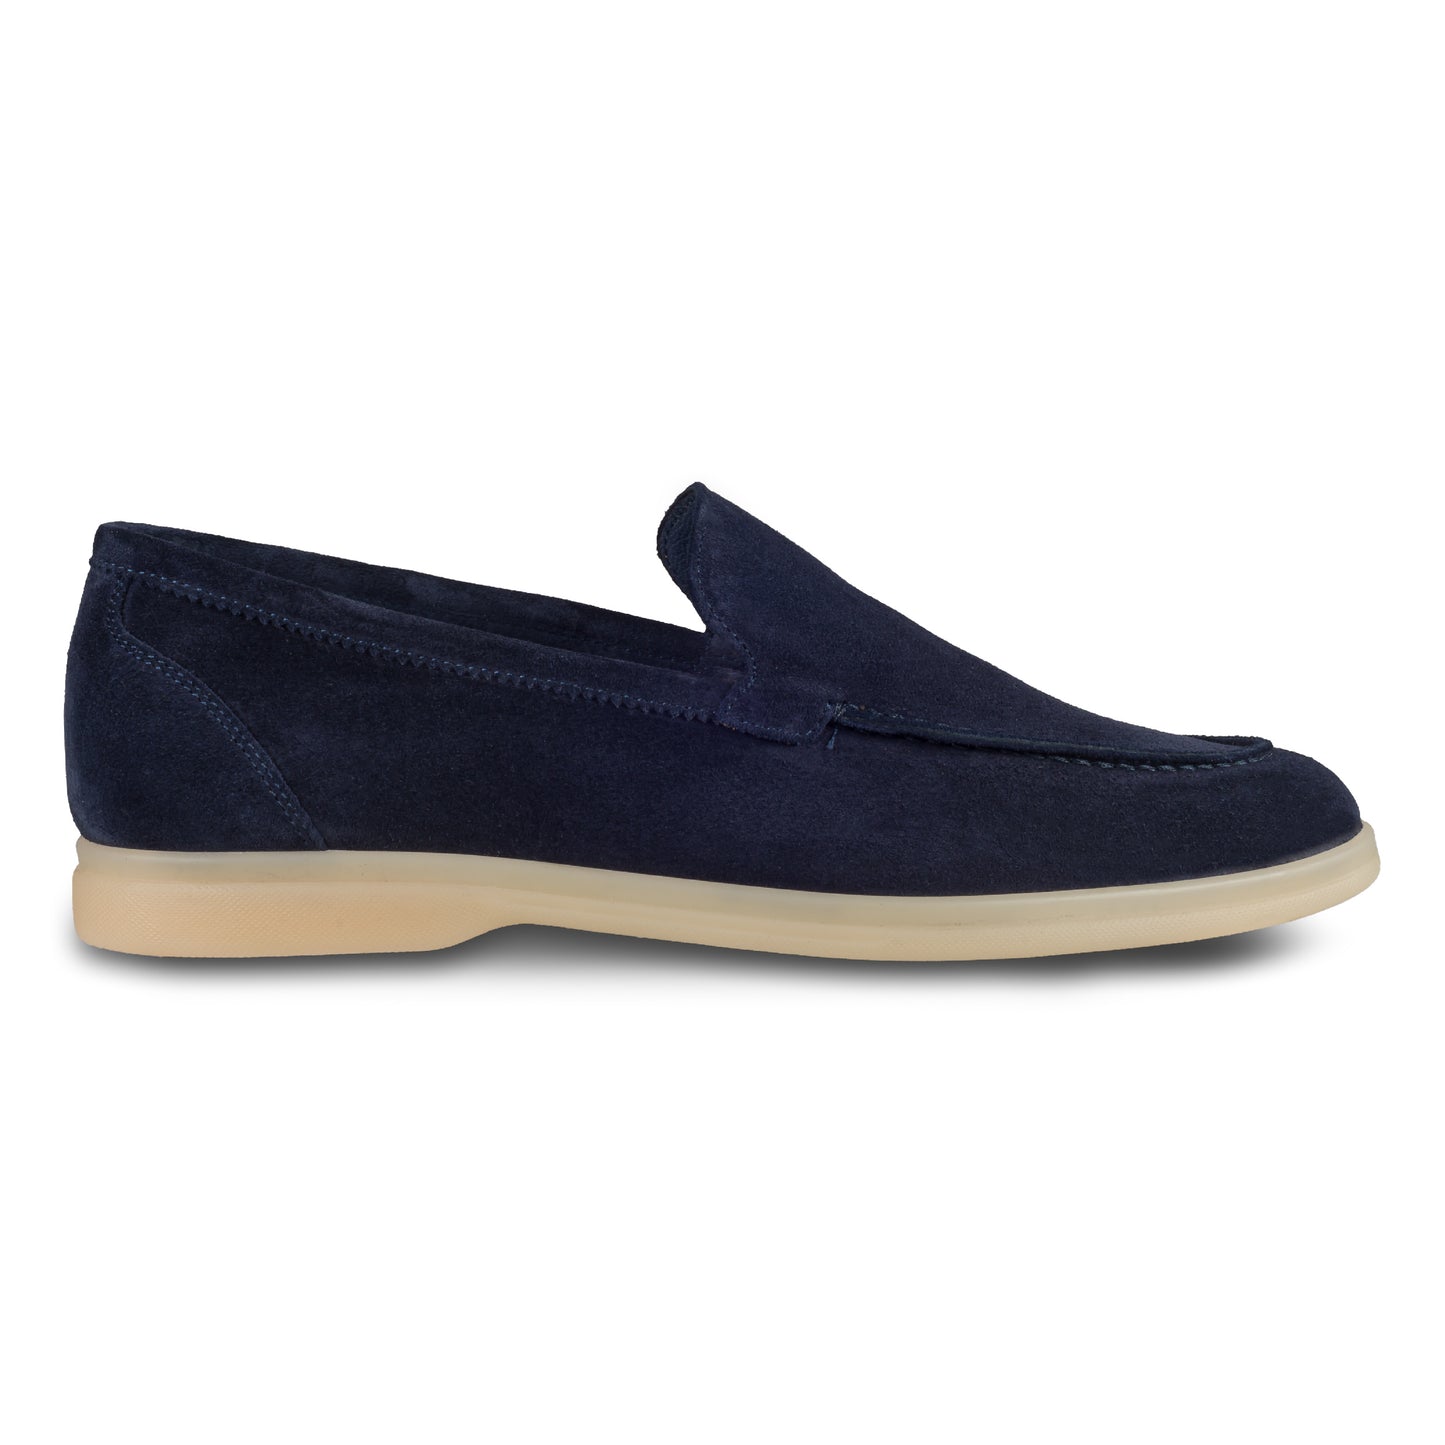 Brecos Italienische Herren-Loafer aus weichem Veloursleder in blau. Mit leichter Gummisohle.  Handgefertigt in Italien. Ansicht der Außenseite rechter Schuh. 